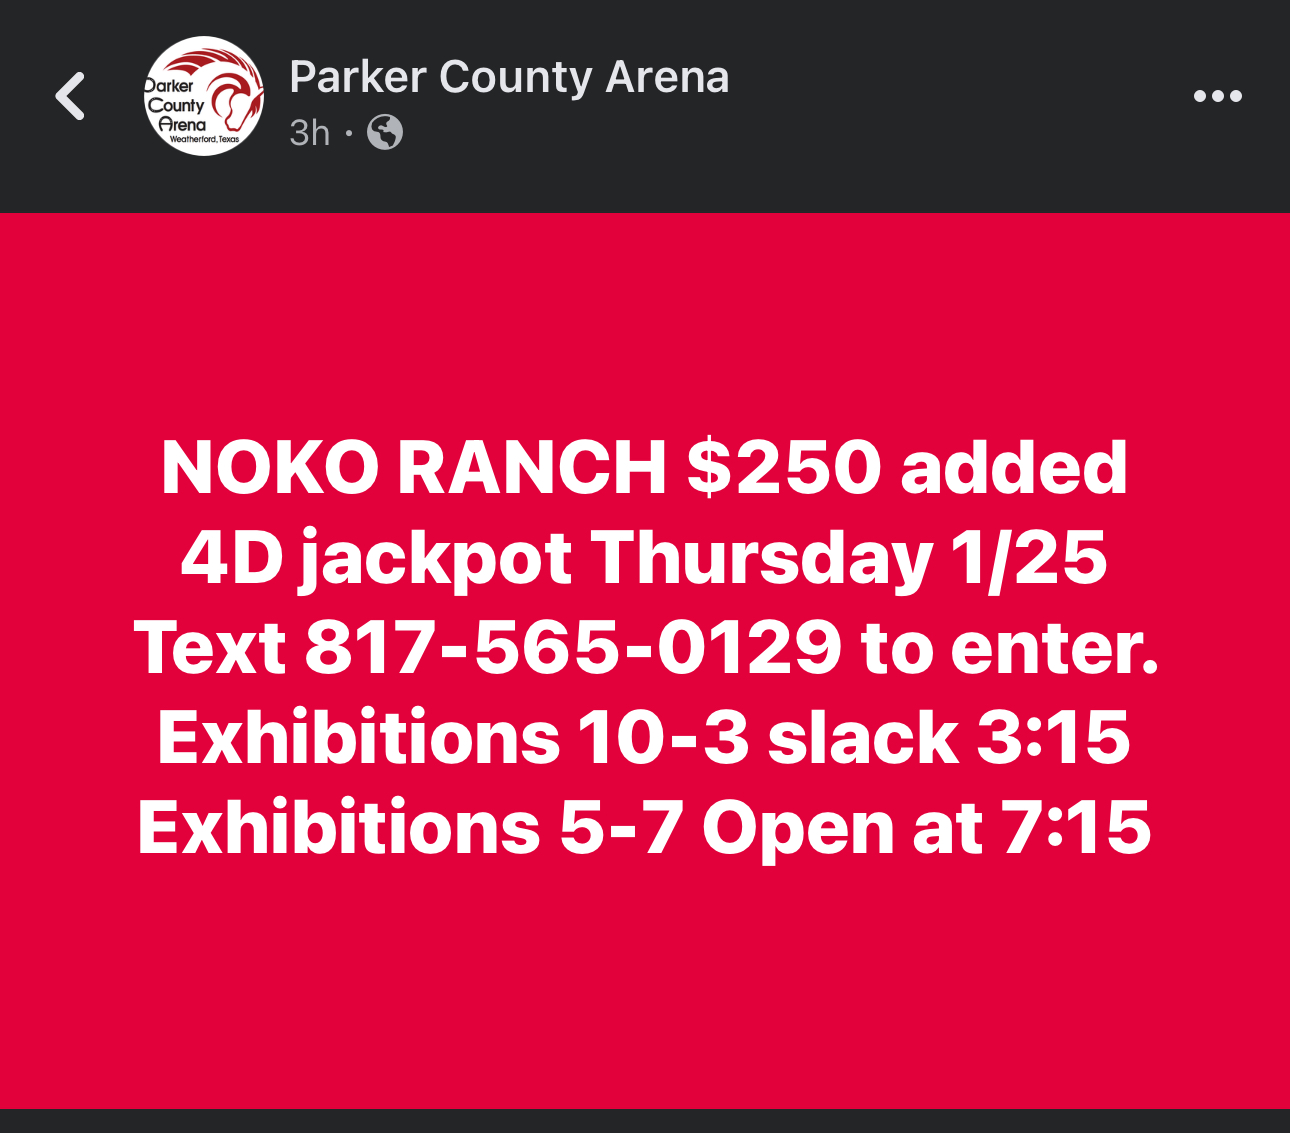 NOKO Ranch Open 4D